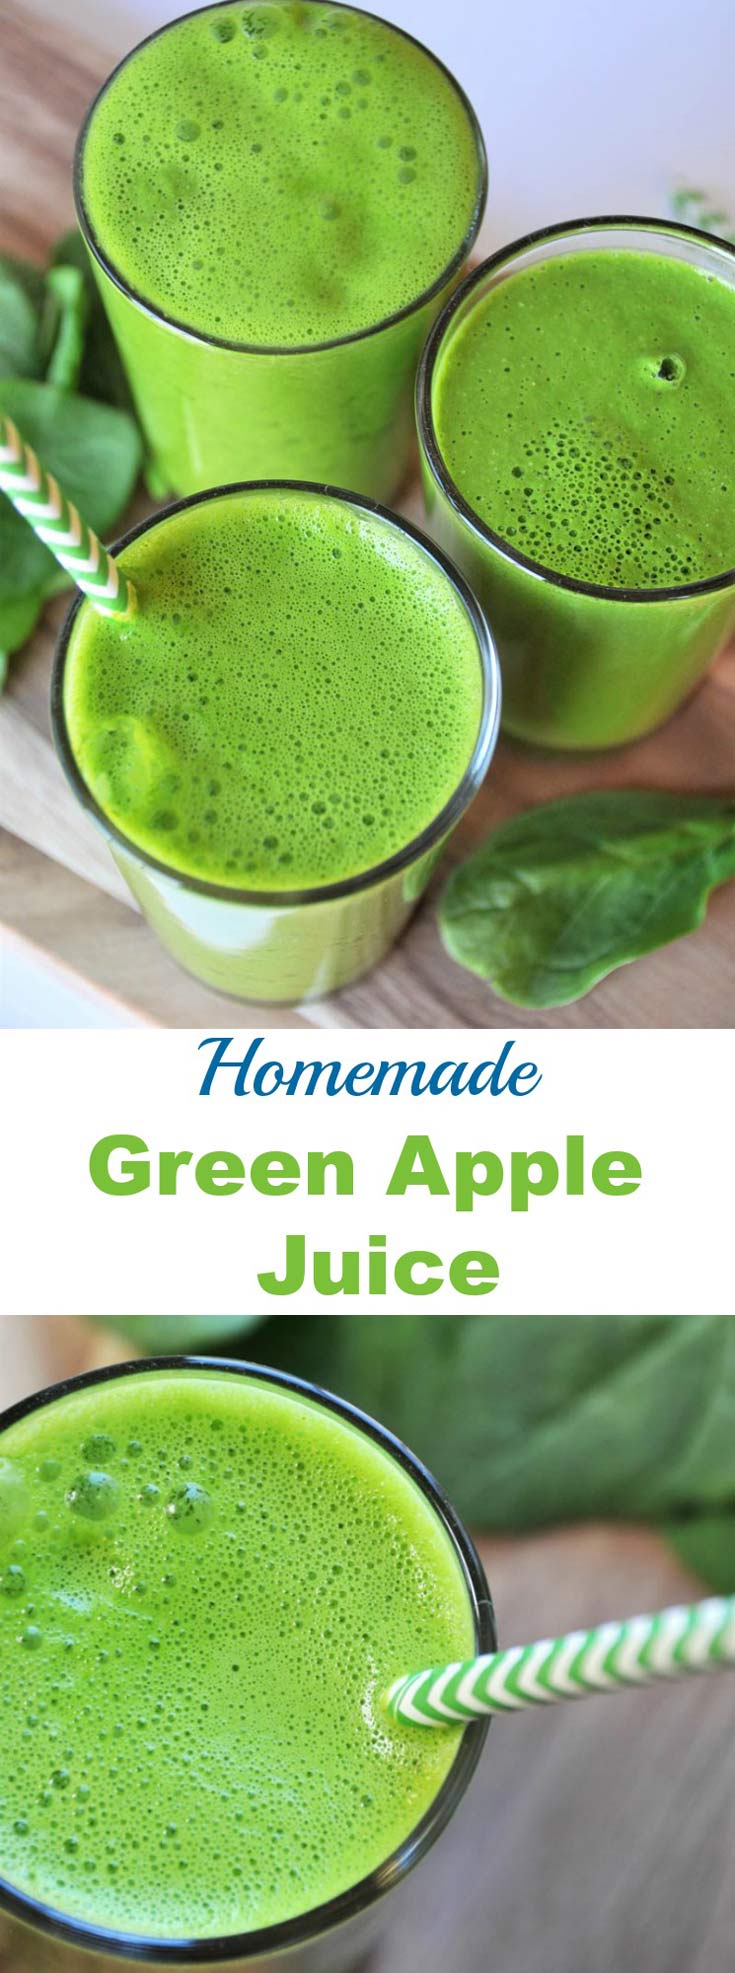  ほうれん草、りんご、レモン、ターメリックの5種類の素材を使った手作り青汁です。 健康的でおいしい野菜の飲み方です。